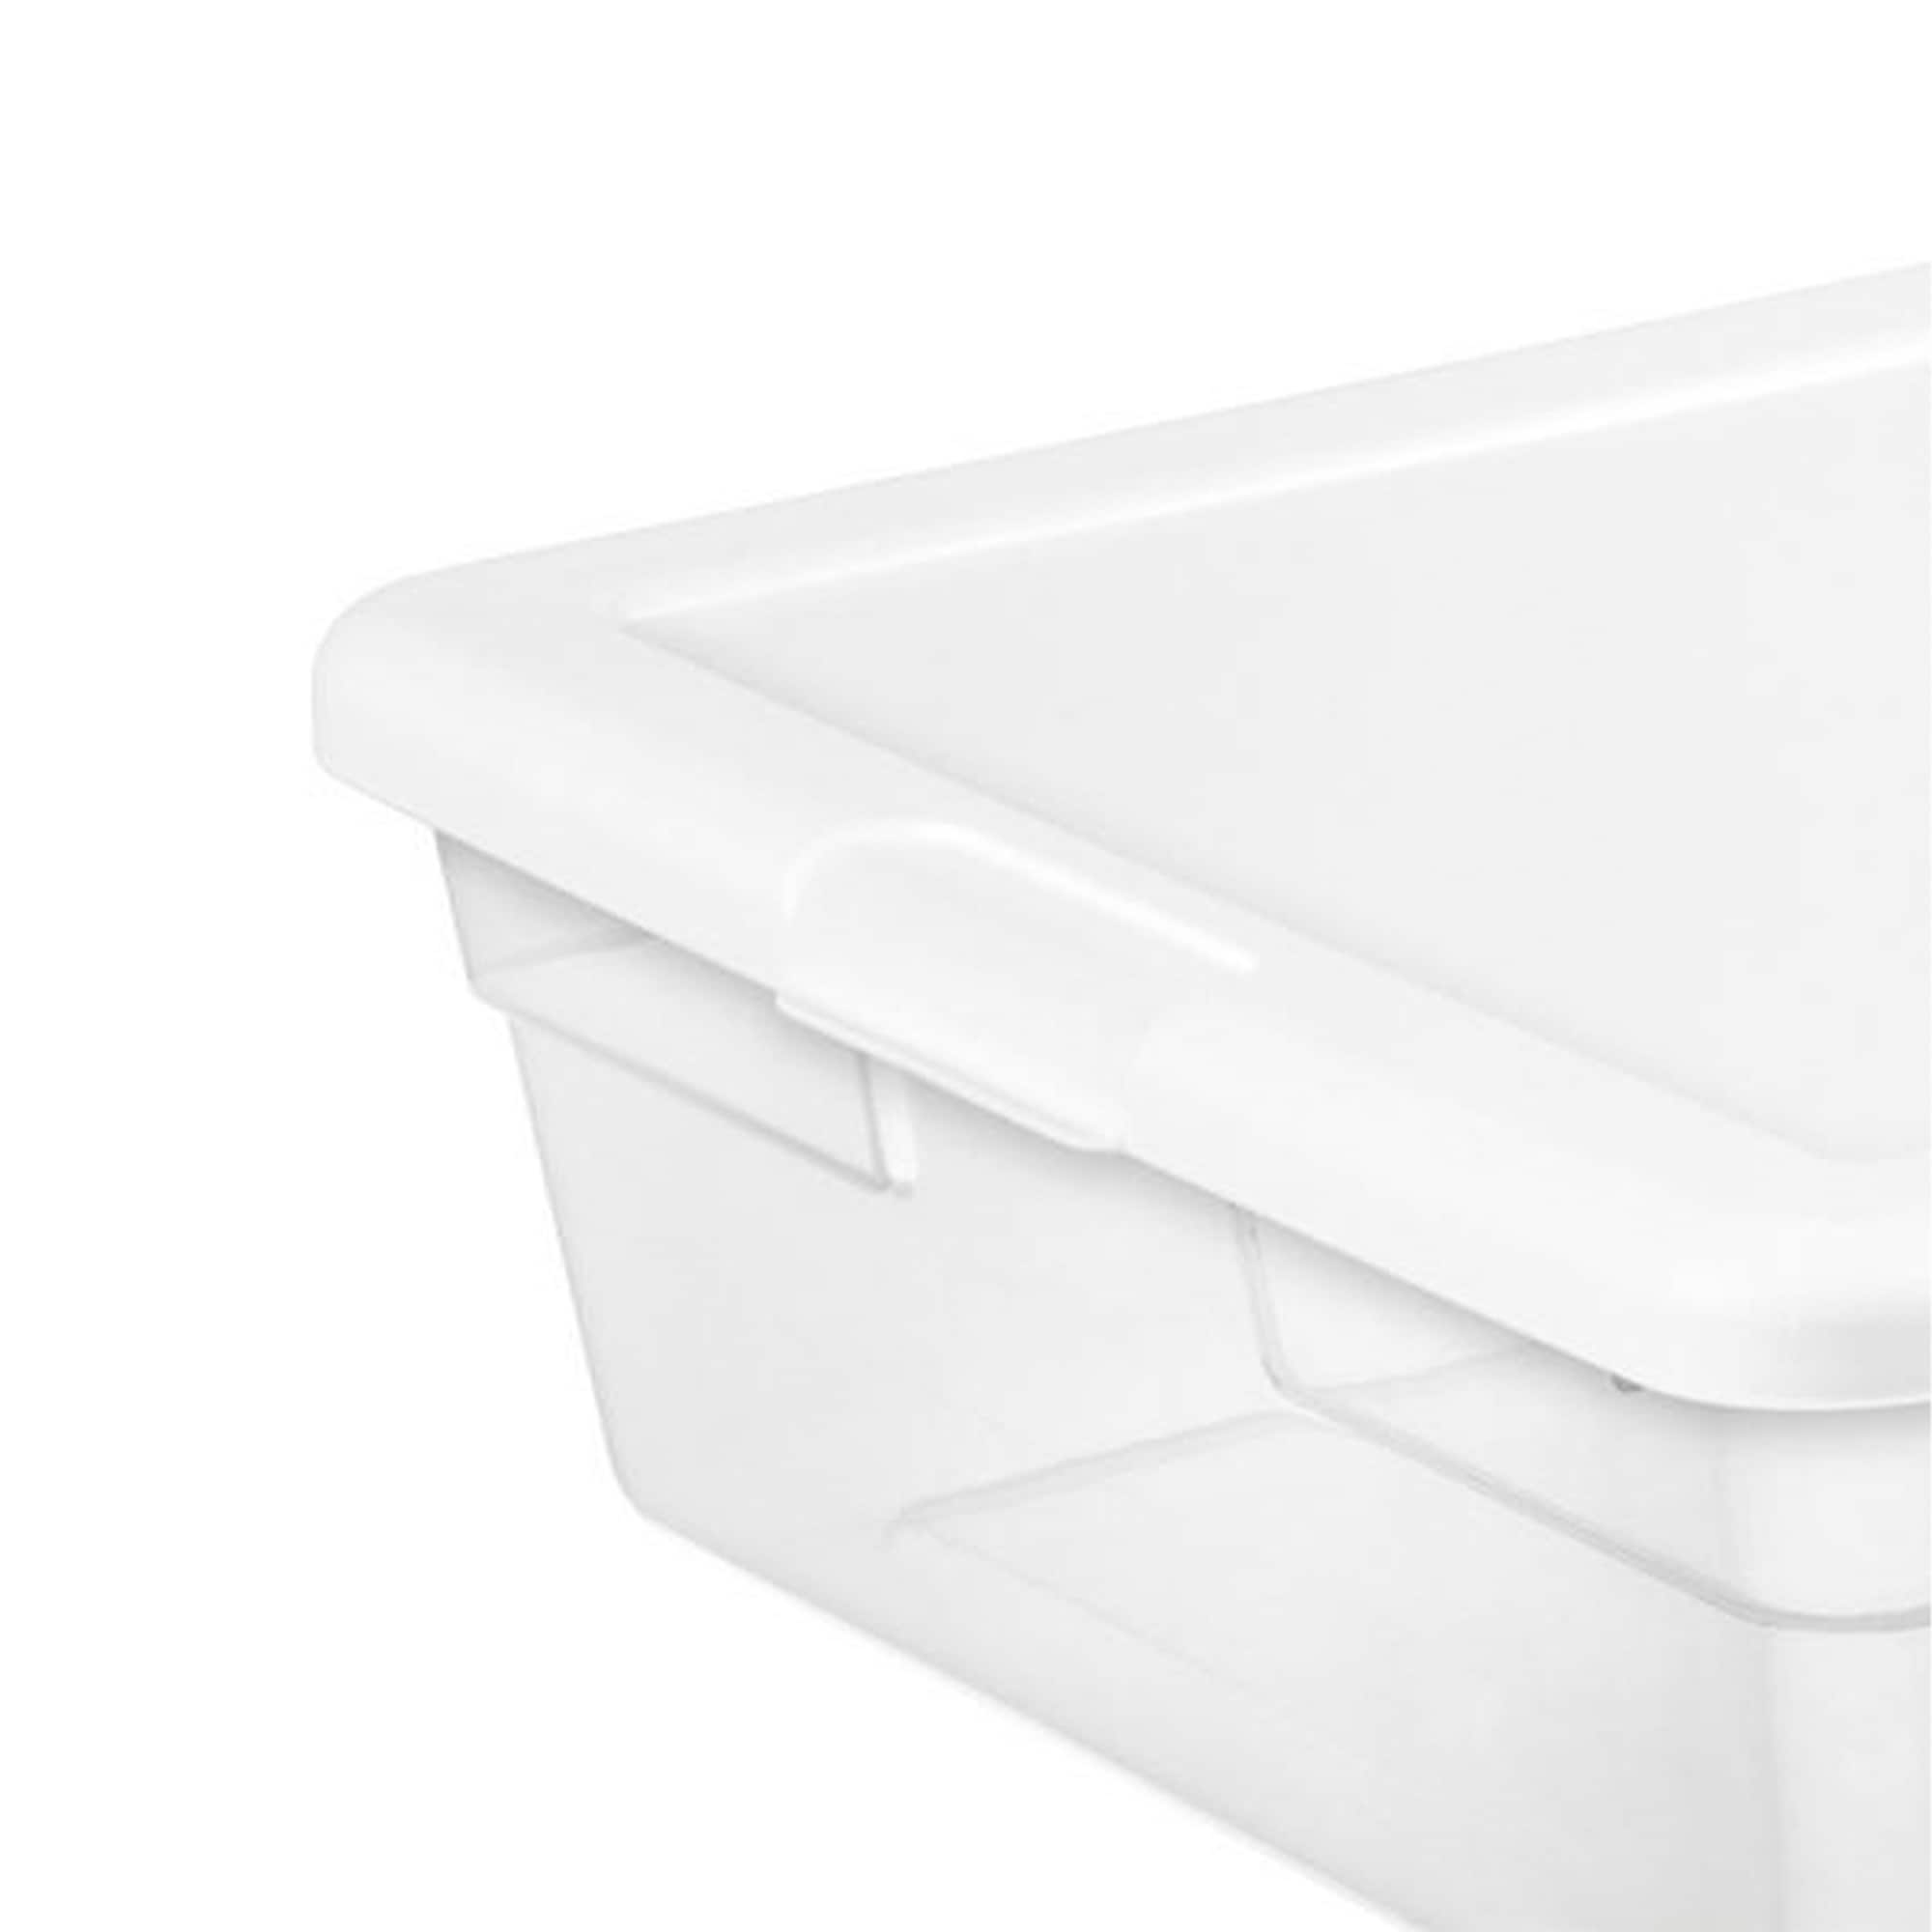 Sterilite 28 Qt. Clear Bin Storage Box Tote Container with White